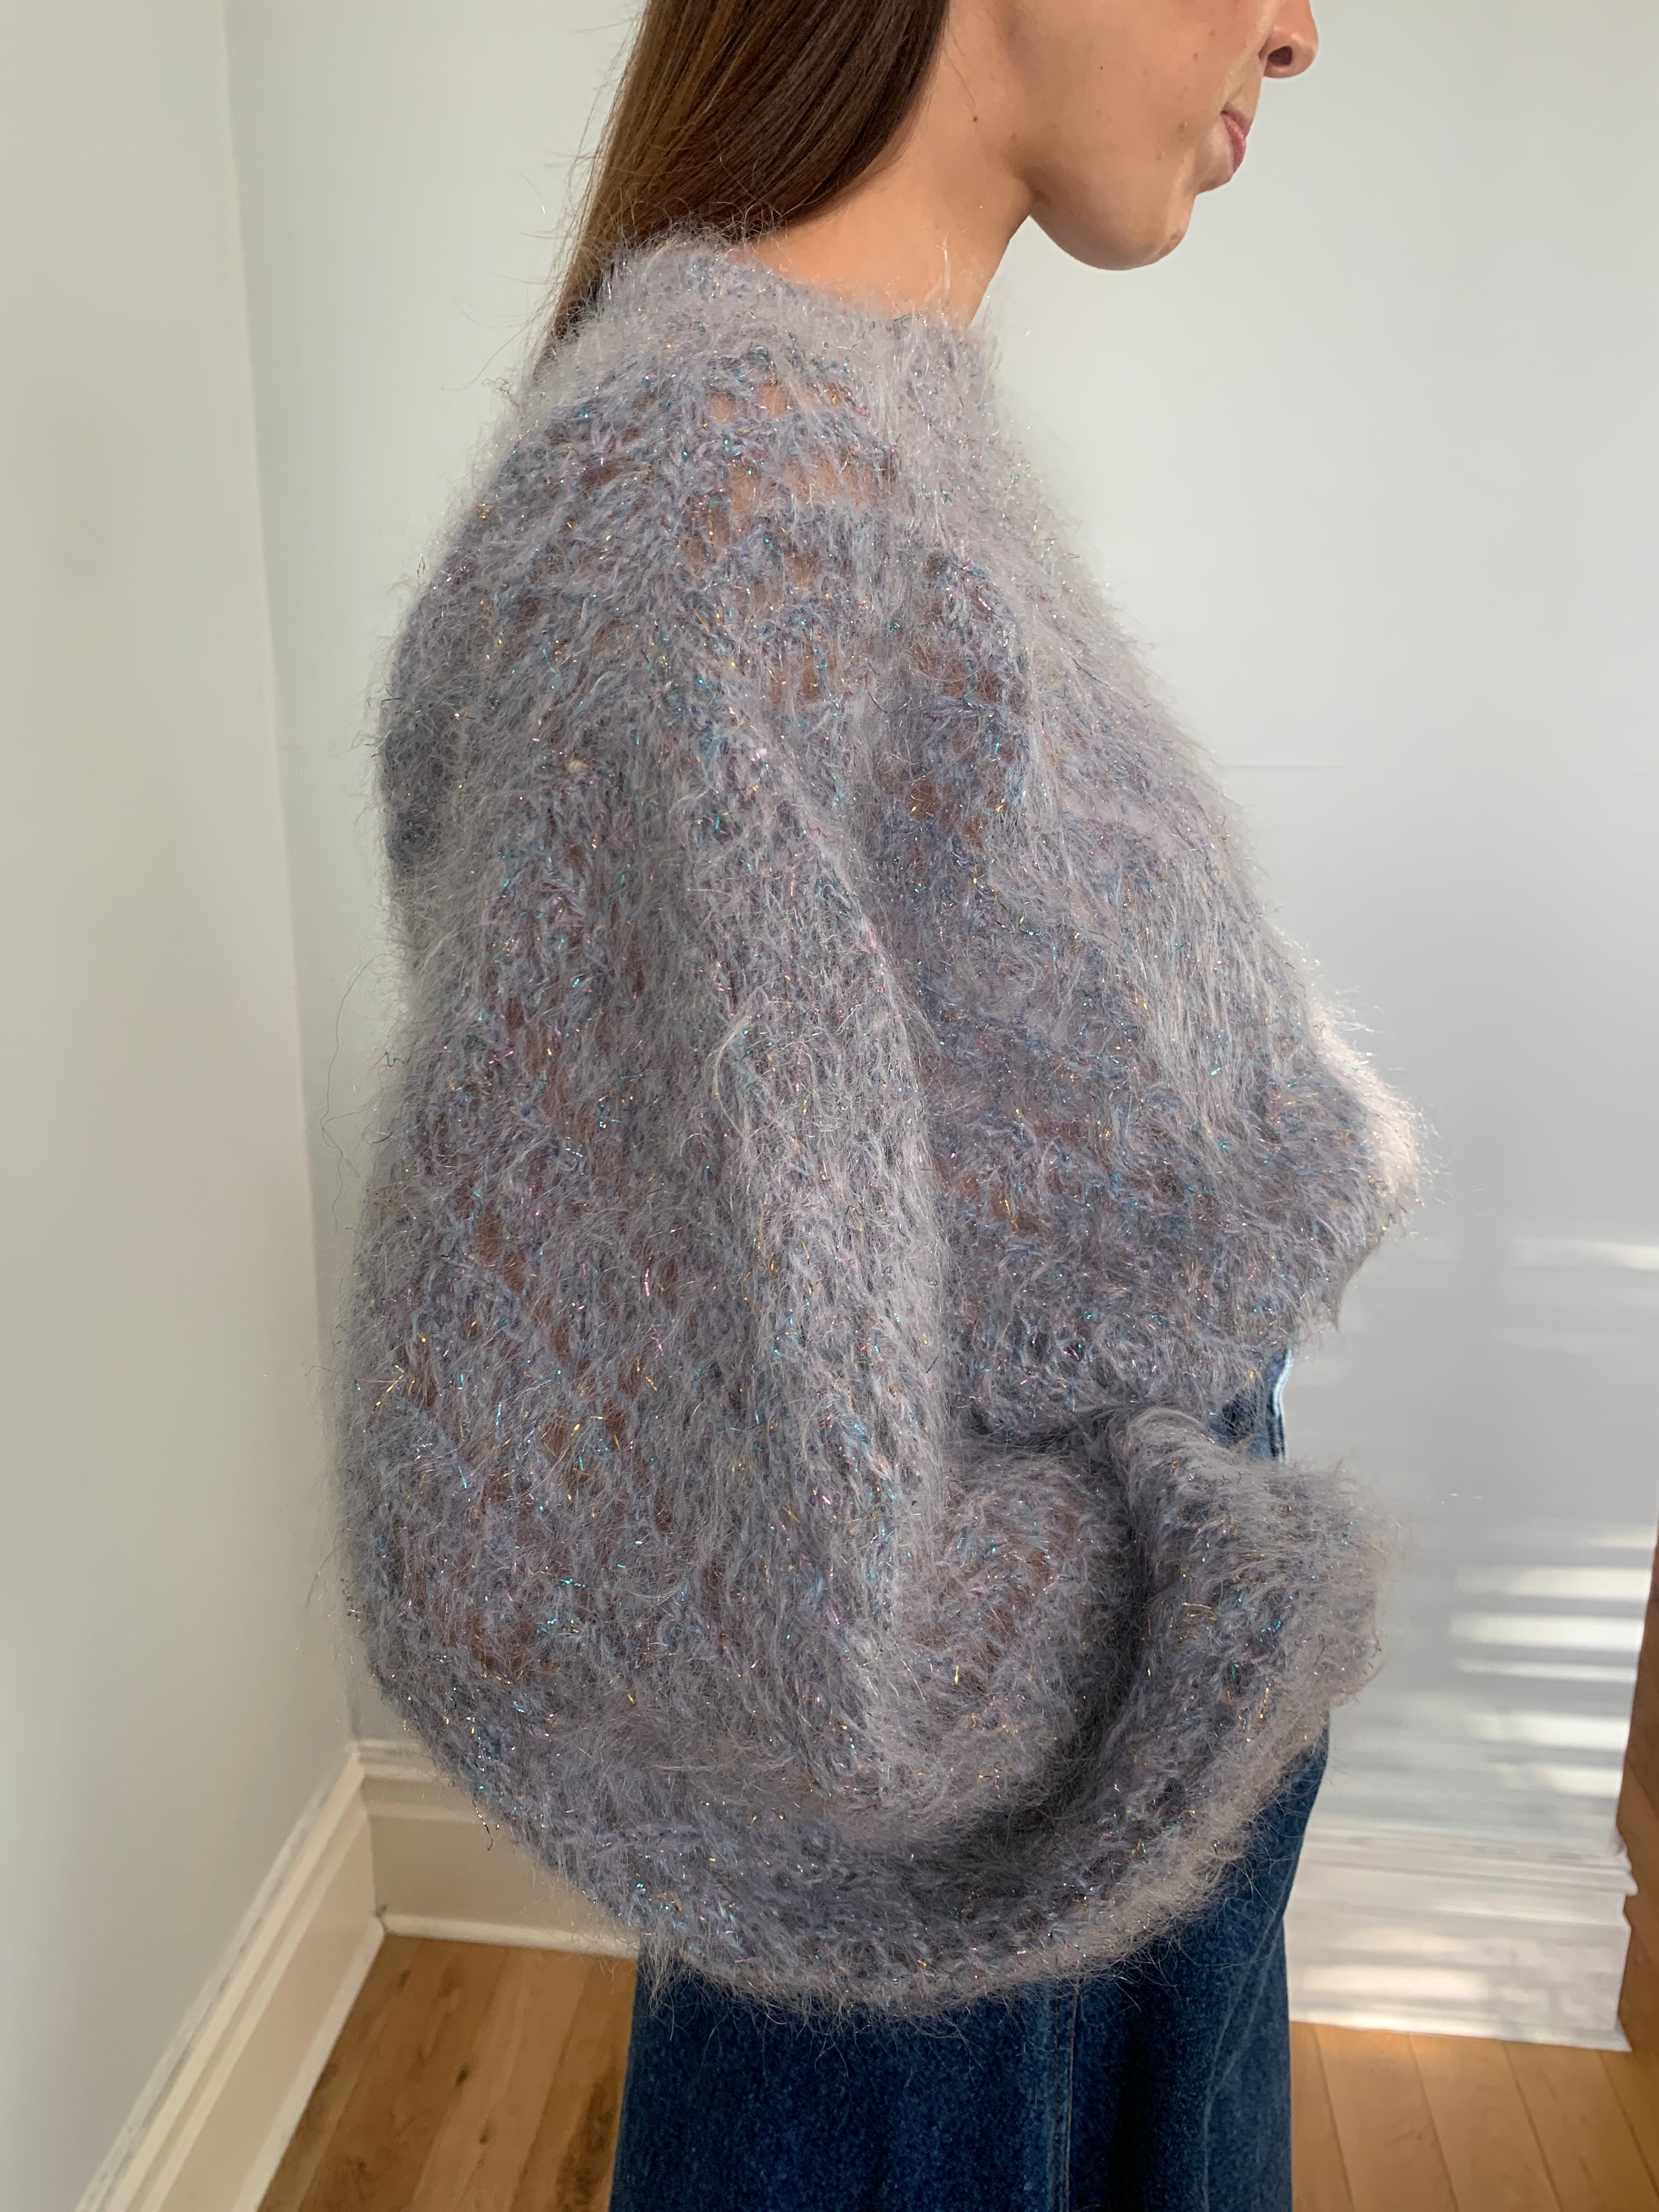 Beautiful hand knitted mohair & metallic jumper